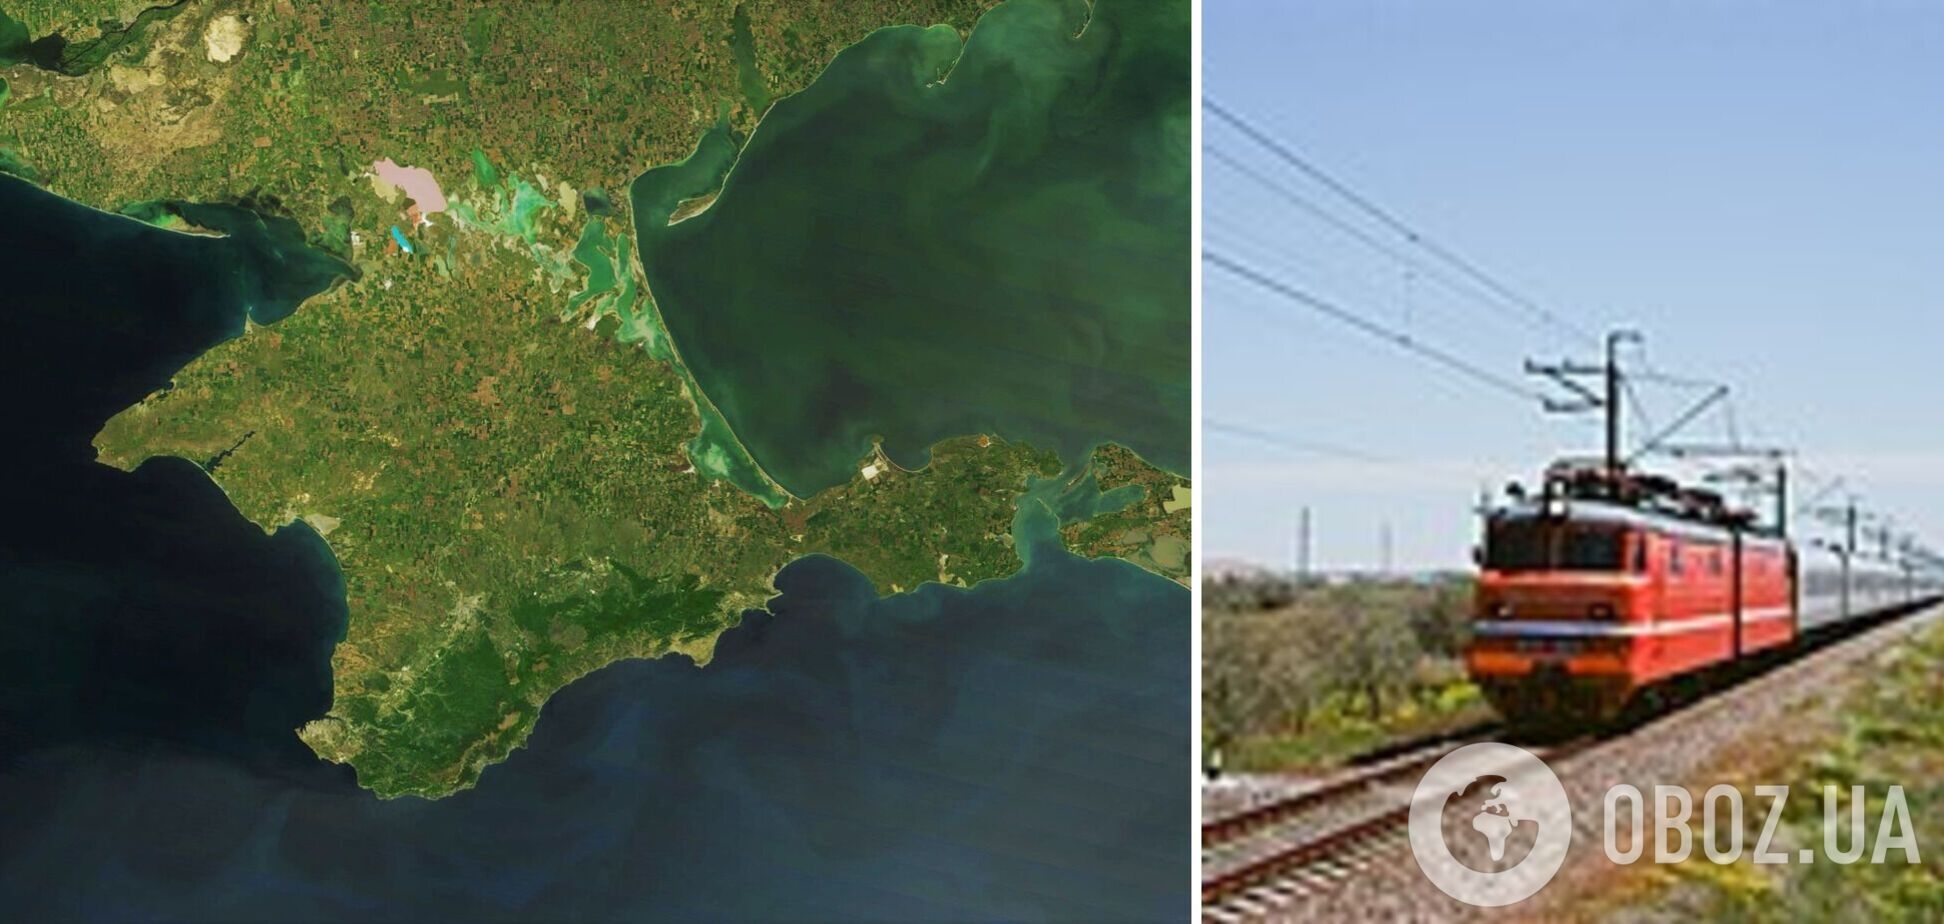  В окупованому Криму пошкодили залізничне полотно: підозрюють диверсію